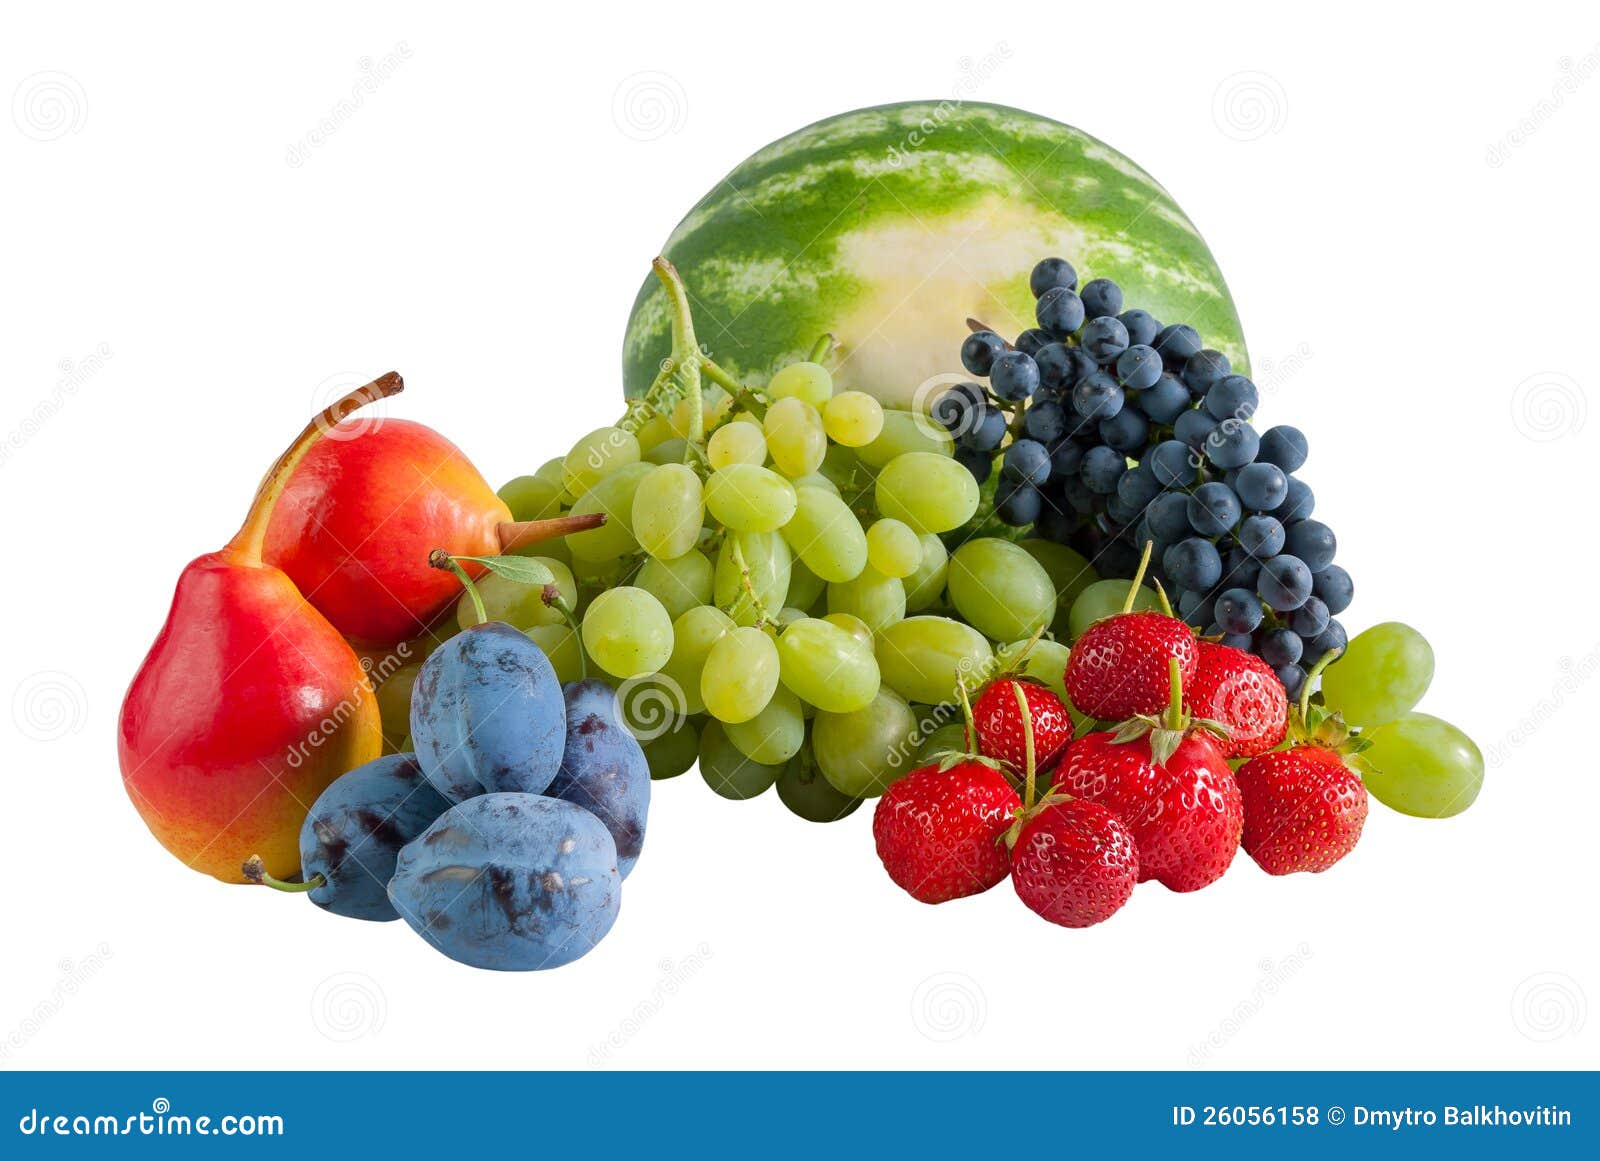 Frische reife verschiedene Früchte getrennt auf weißem Hintergrund